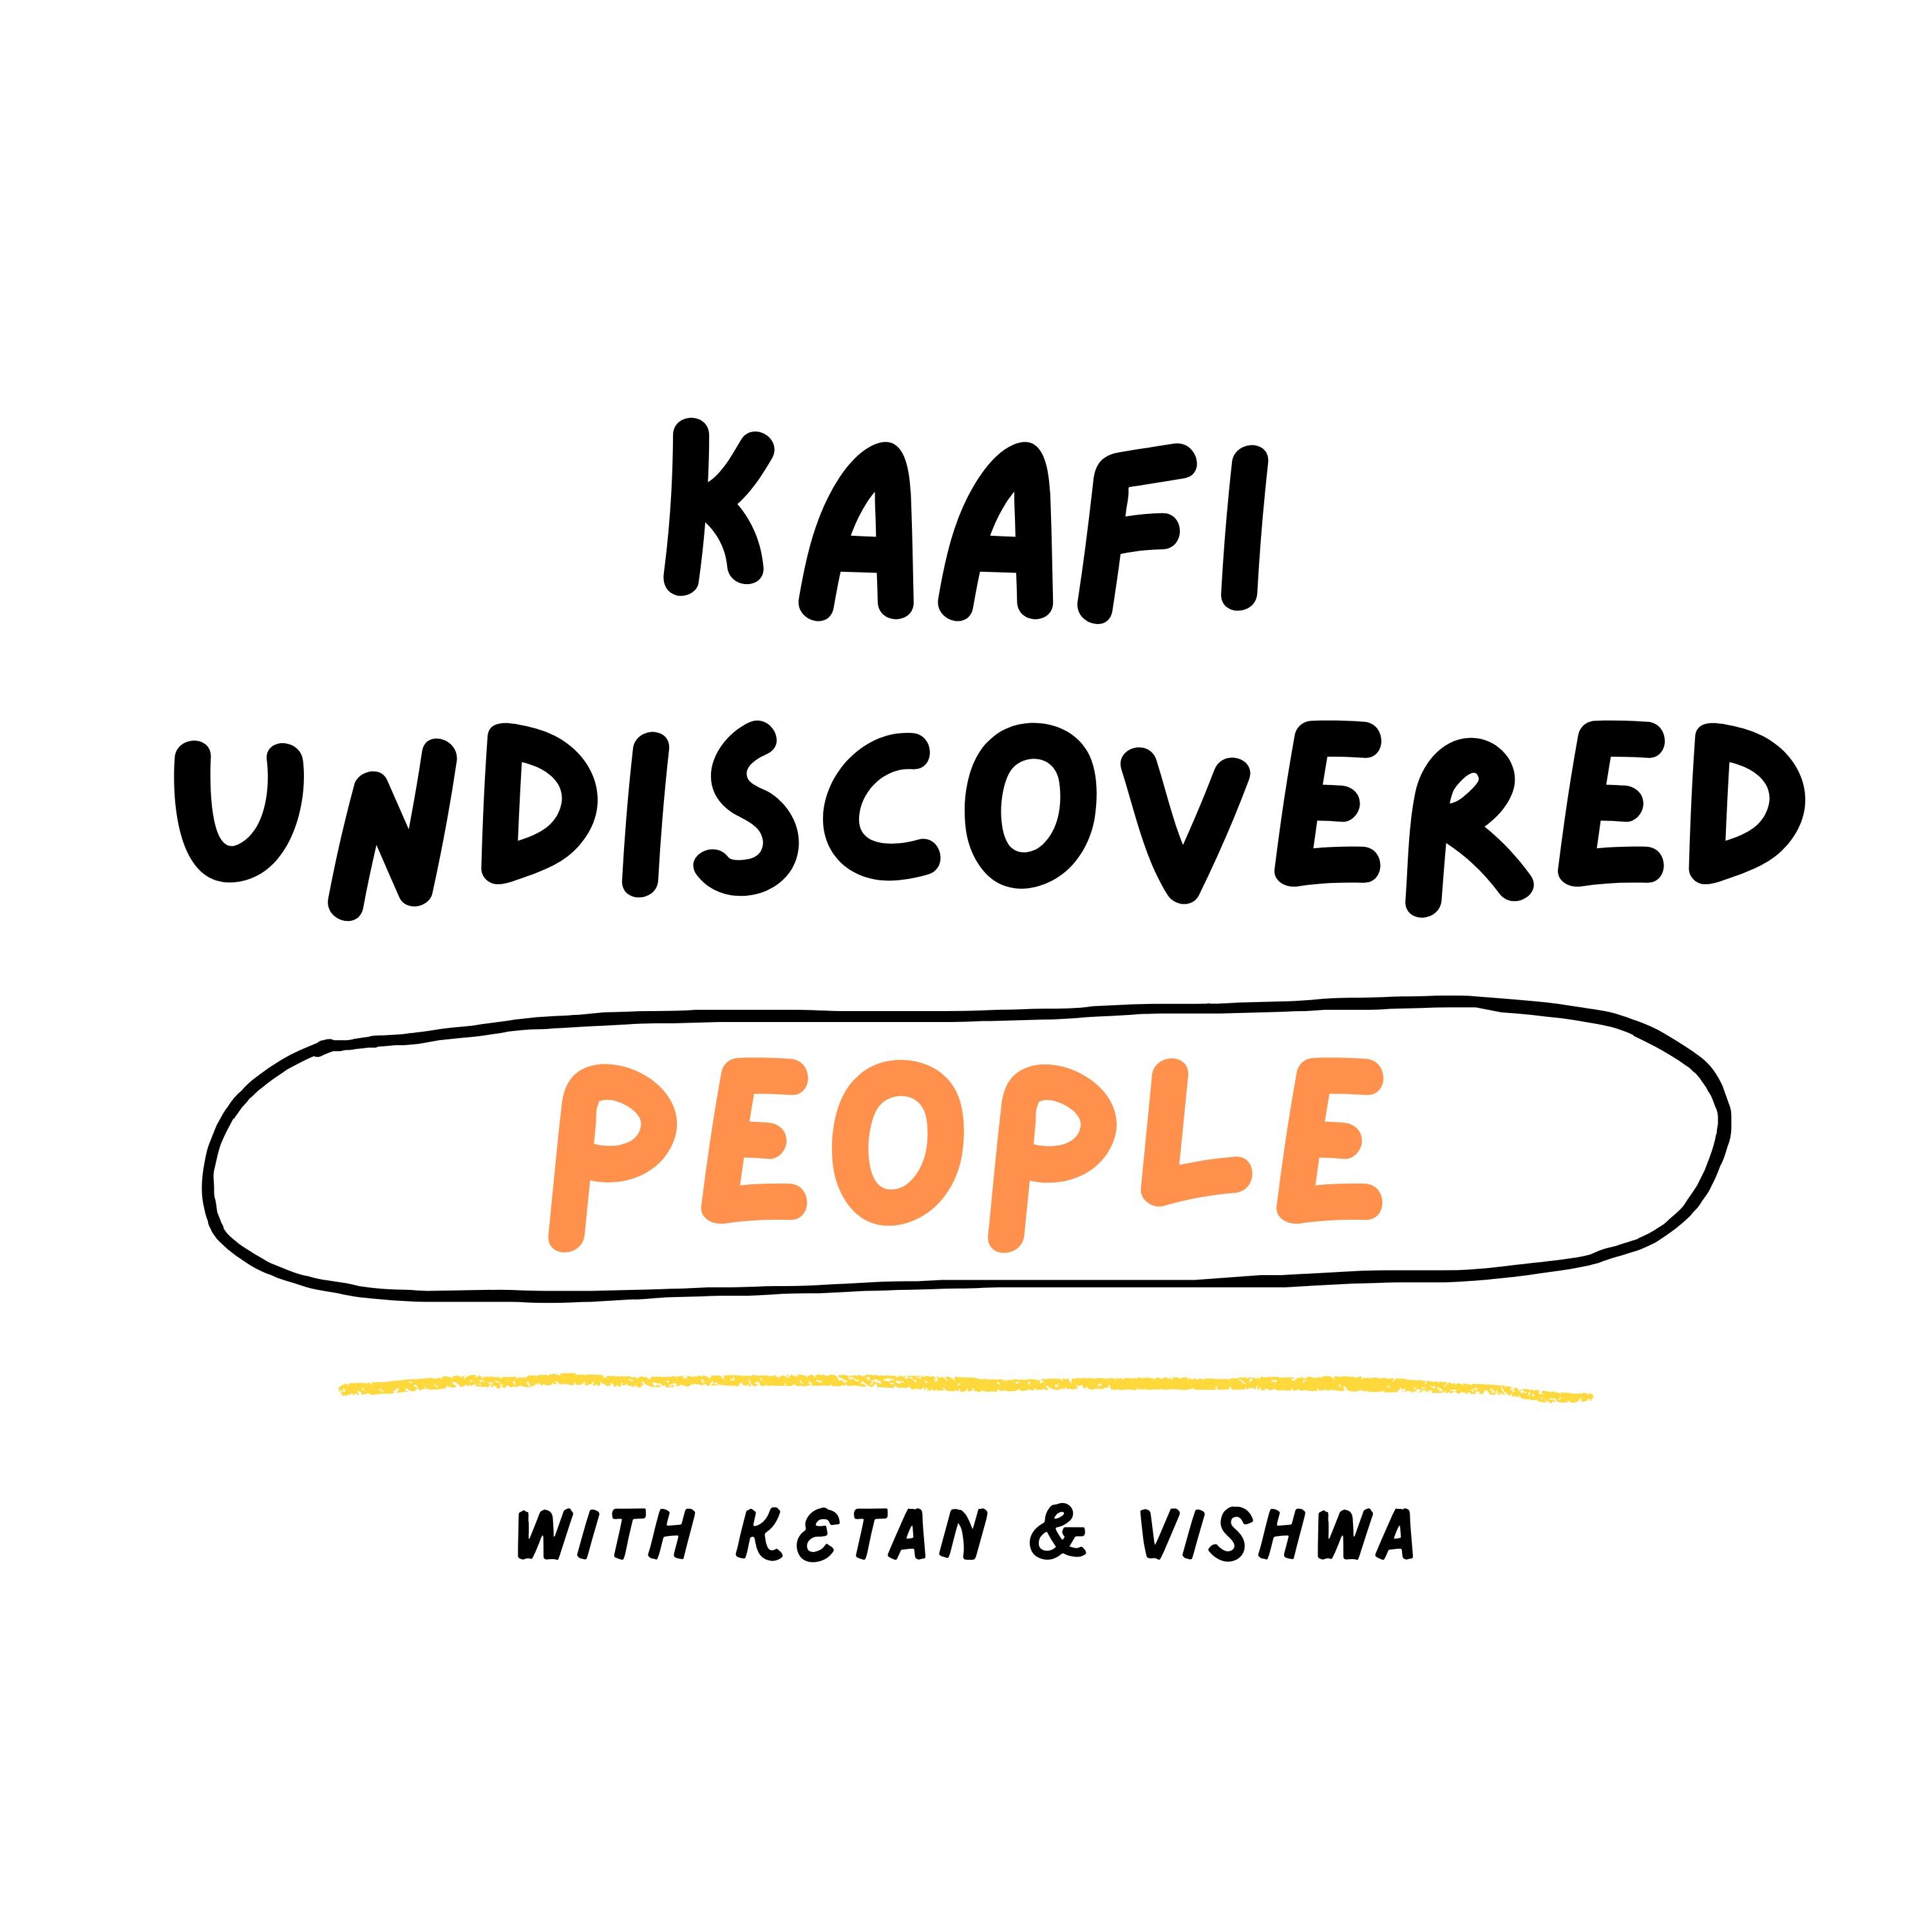 Kaafi Undiscovered People